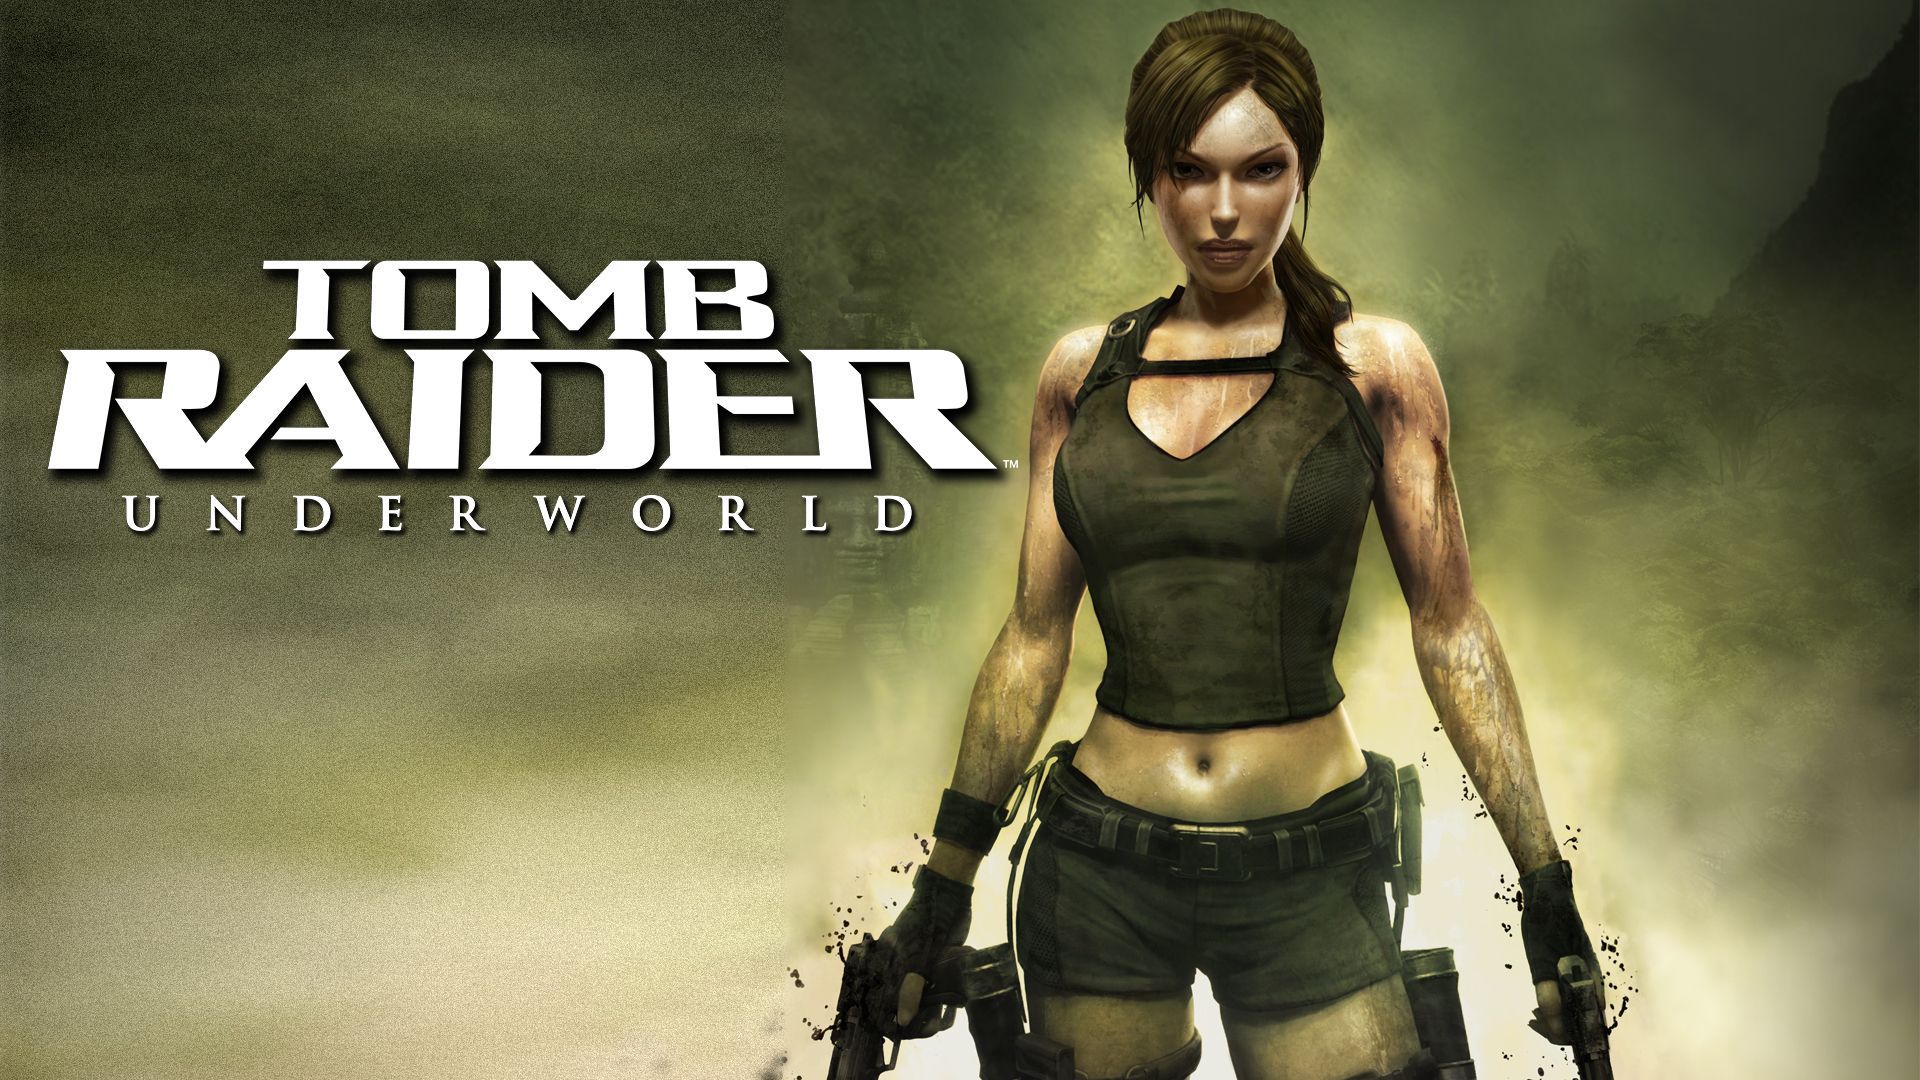 Прохождение игры Tomb Raider: Underworld # 1. HD - Full 1080p. (Русская версия игры)